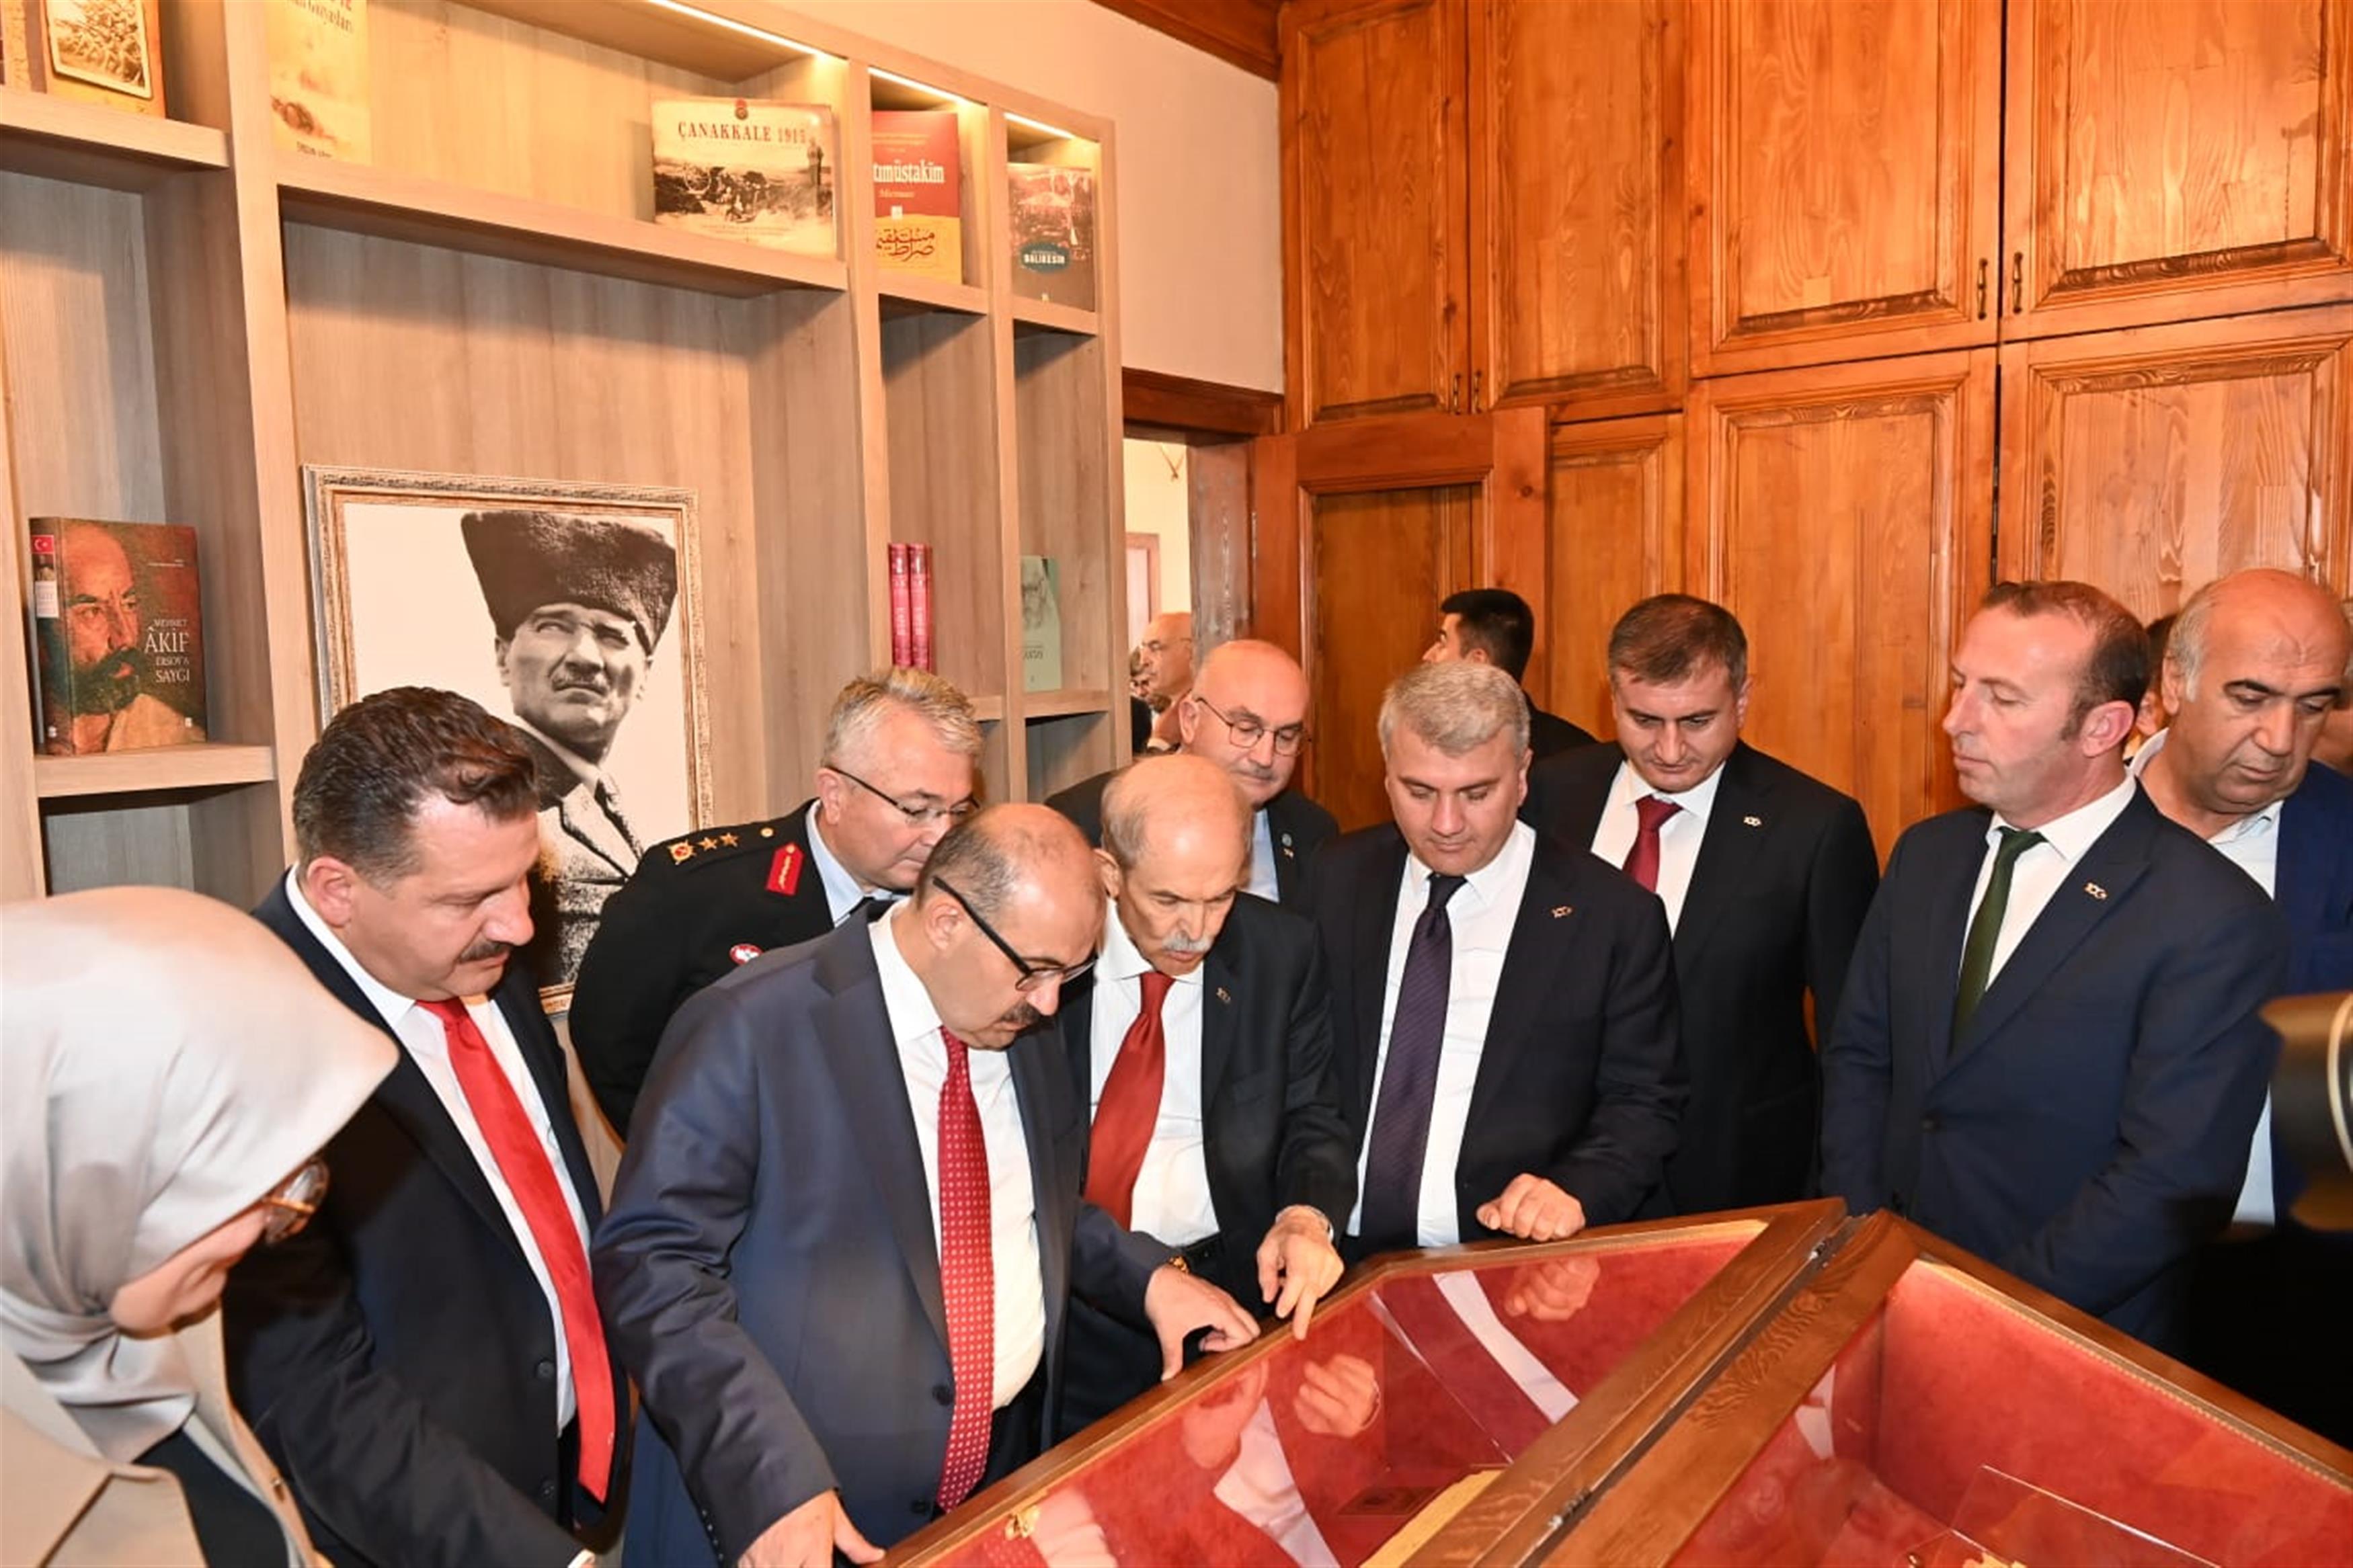 Büyükşehir, Cumhuriyet’in 100. yılını kütüphane açarak kutladı